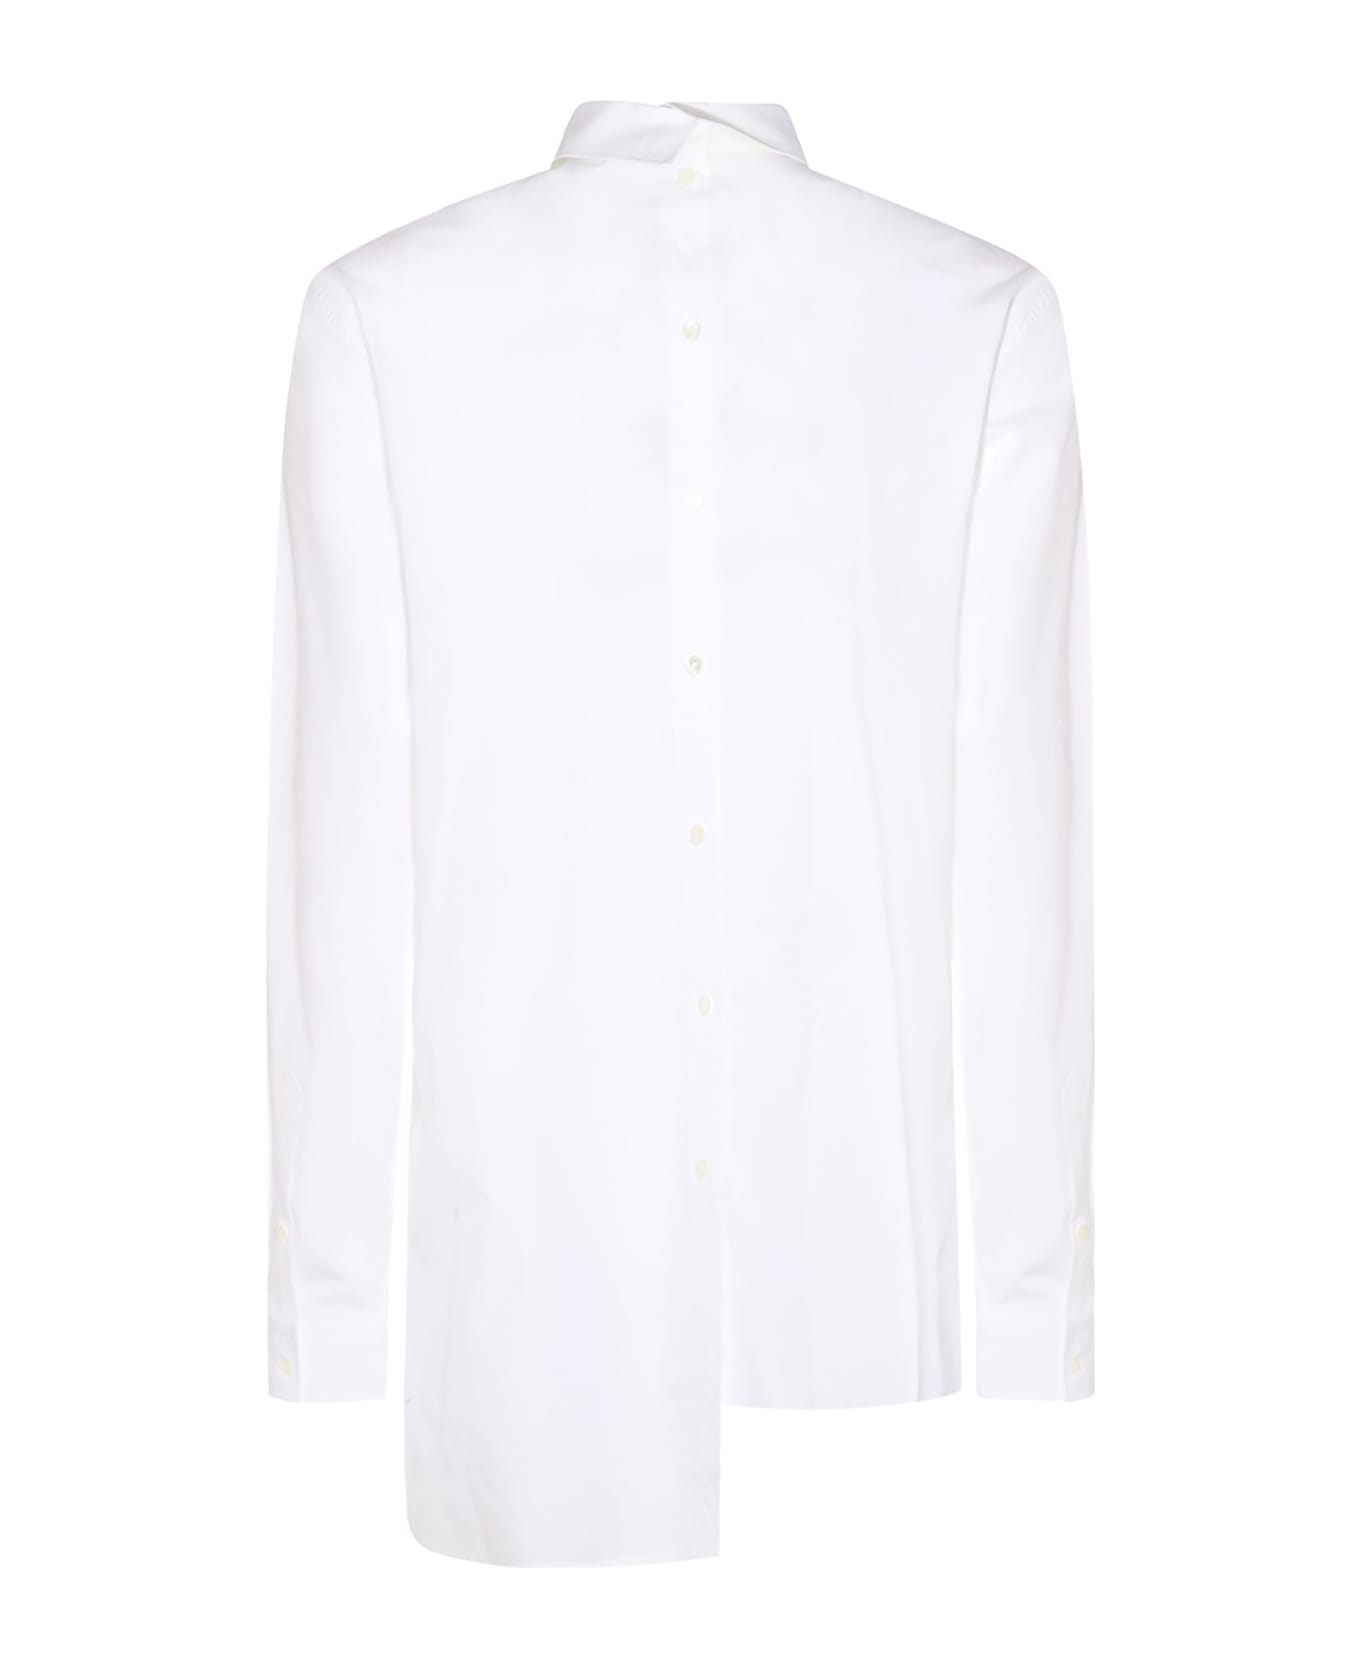 Lanvin Shirts White - White